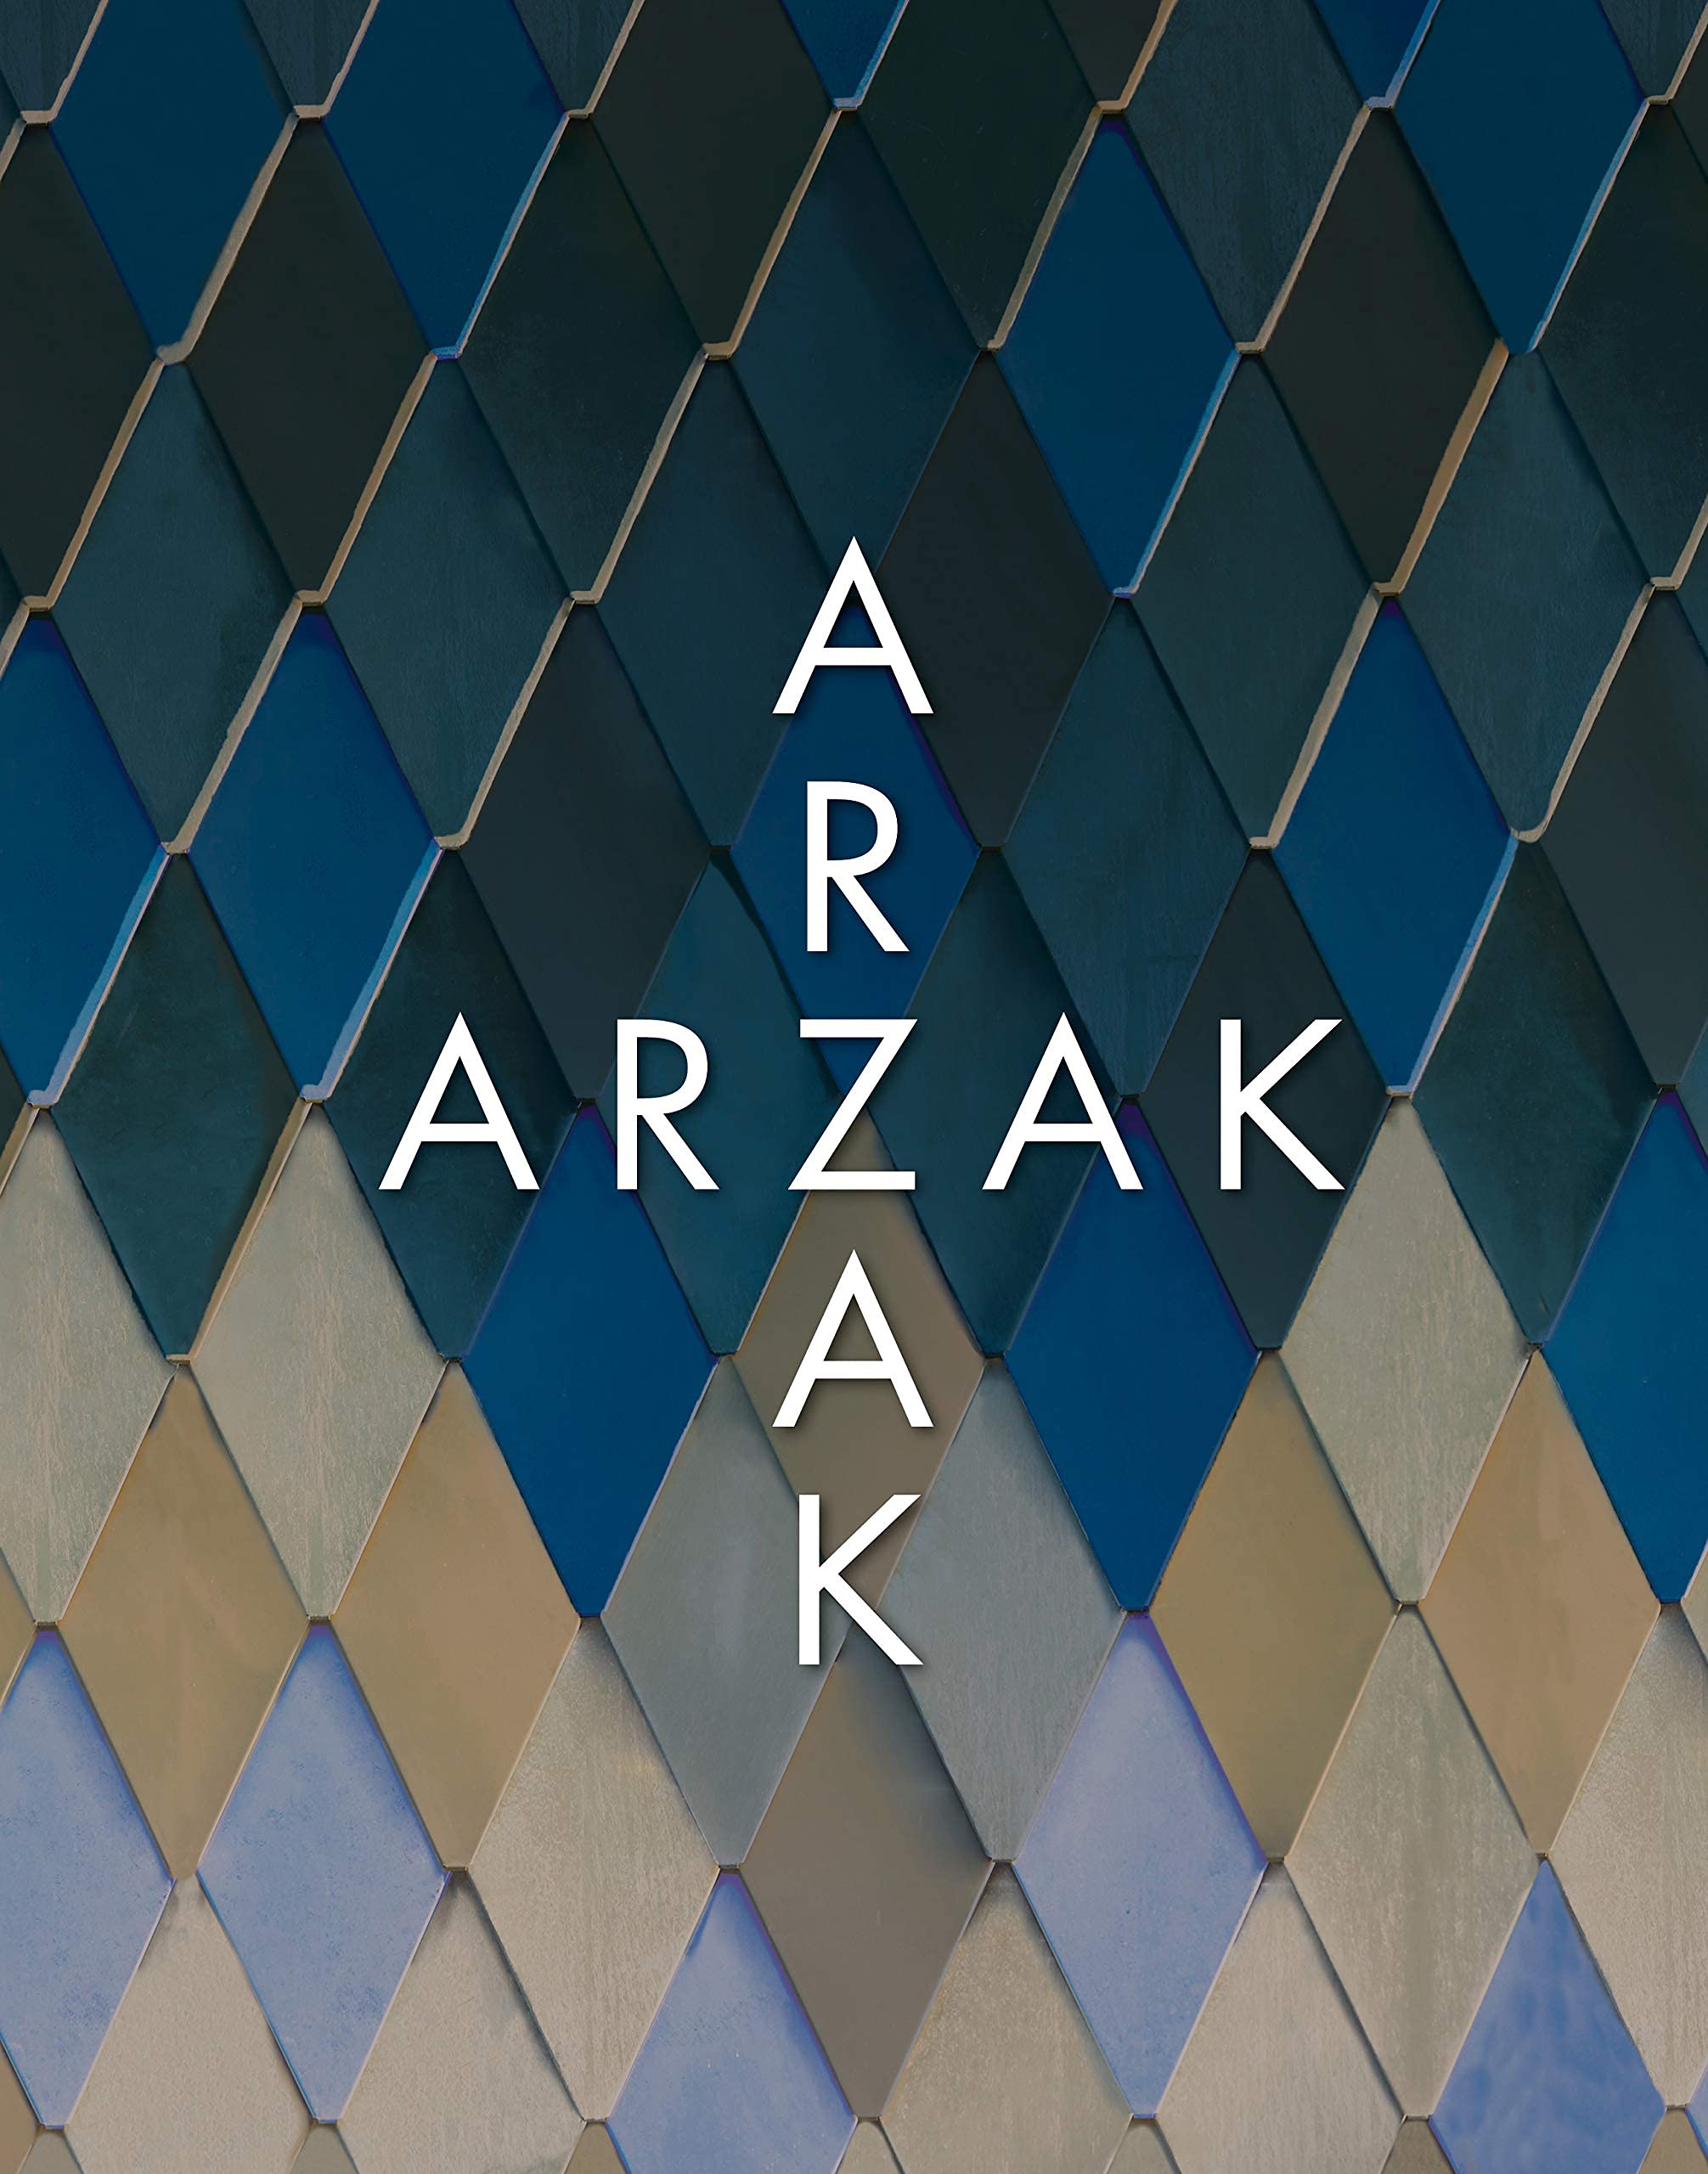 Arzak + Arzak (Juan Mari Arzak, Elena Arzak)